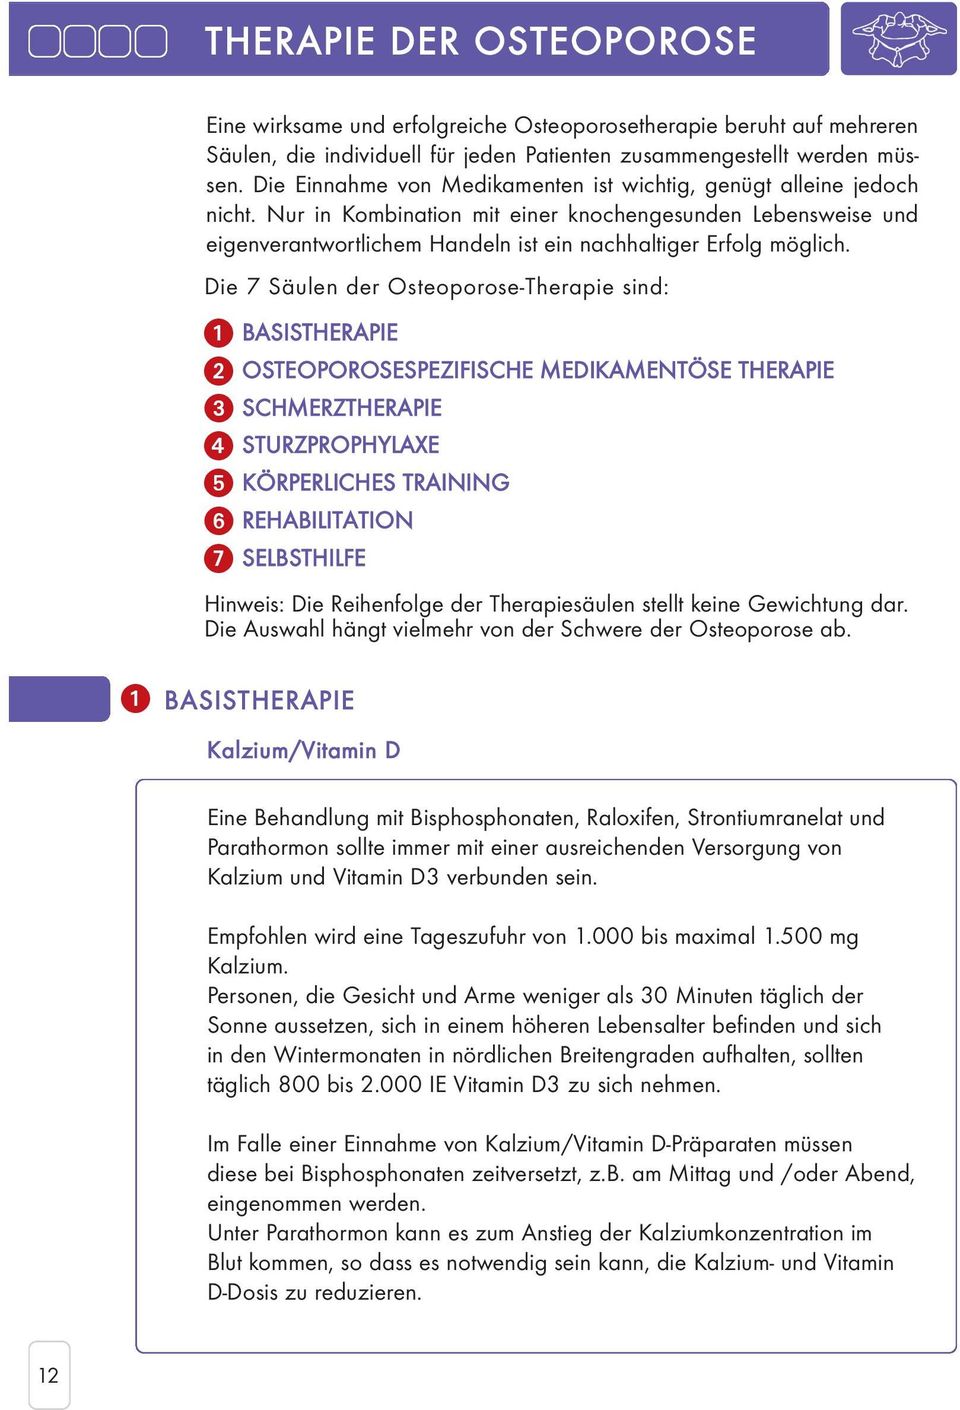 Die 7 Säulen der Osteoporose-Therapie sind: 1 BASISTHERAPIE 2 OSTEOPOROSESPEZIFISCHE MEDIKAMENTÖSE THERAPIE 3 SCHMERZTHERAPIE 4 STURZPROPHYLAXE 5 KÖRPERLICHES TRAINING 6 REHABILITATION 7 SELBSTHILFE